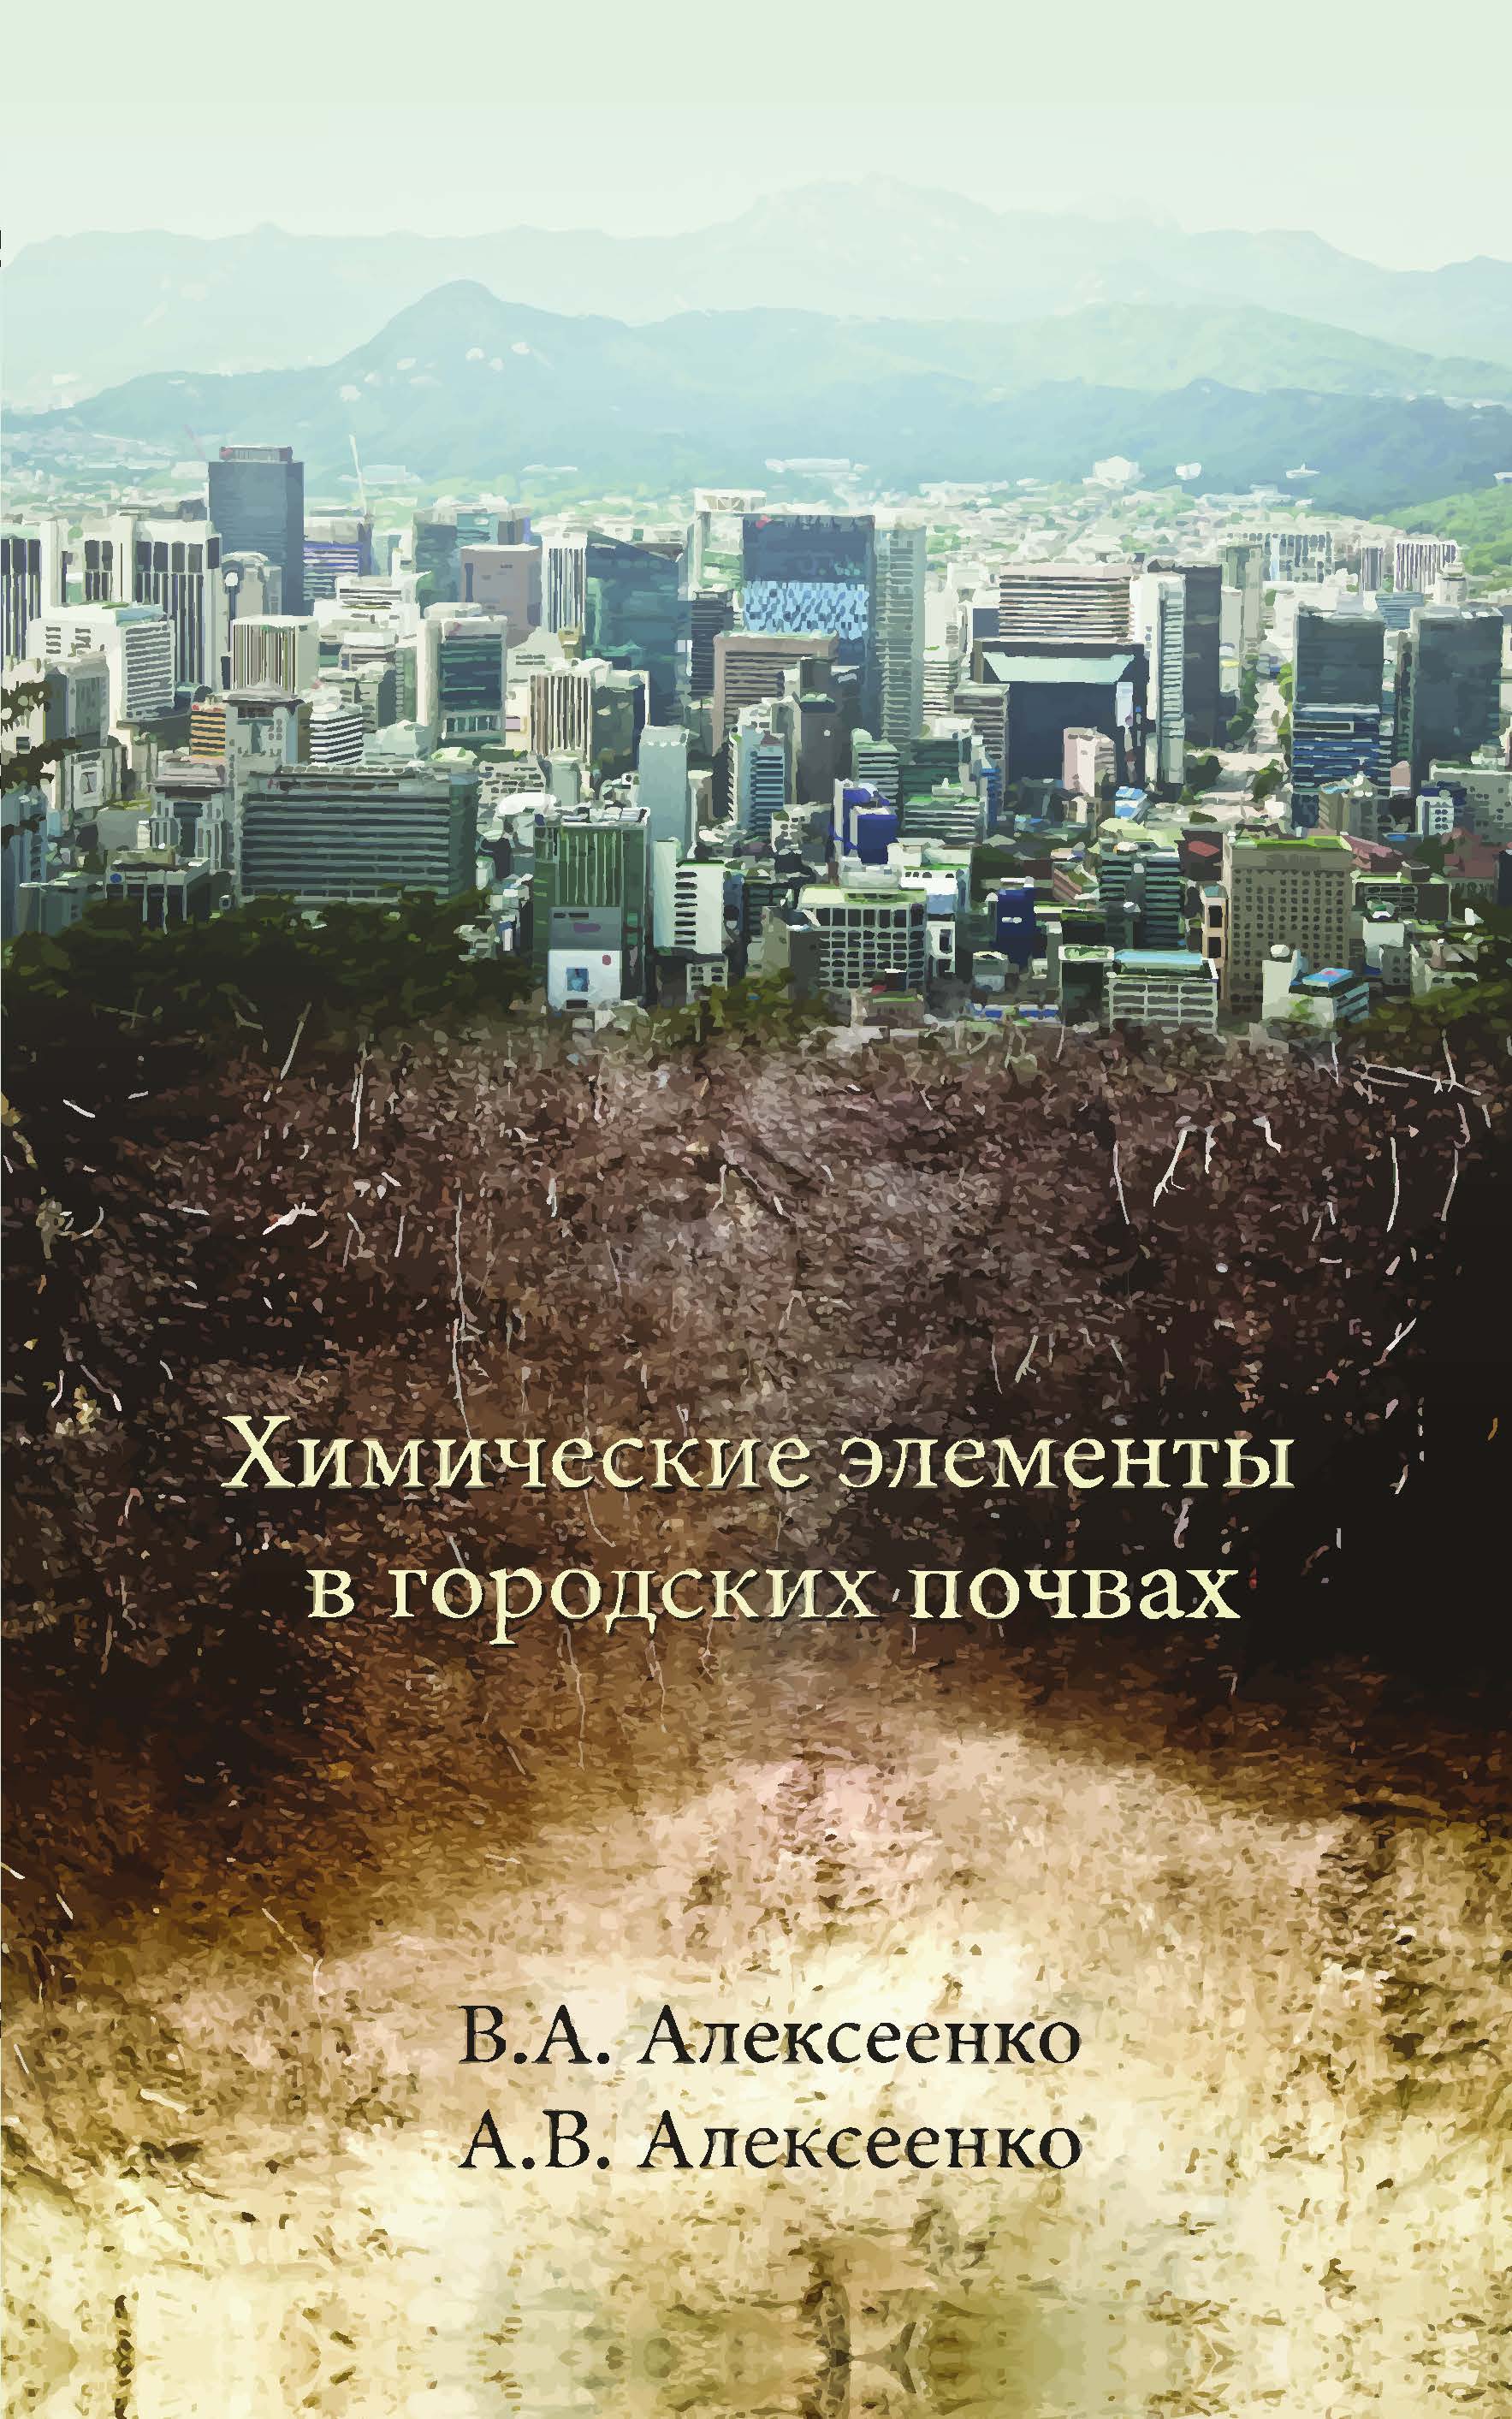 Алексеенко В. А. Химические элементы в городских почвах: монография